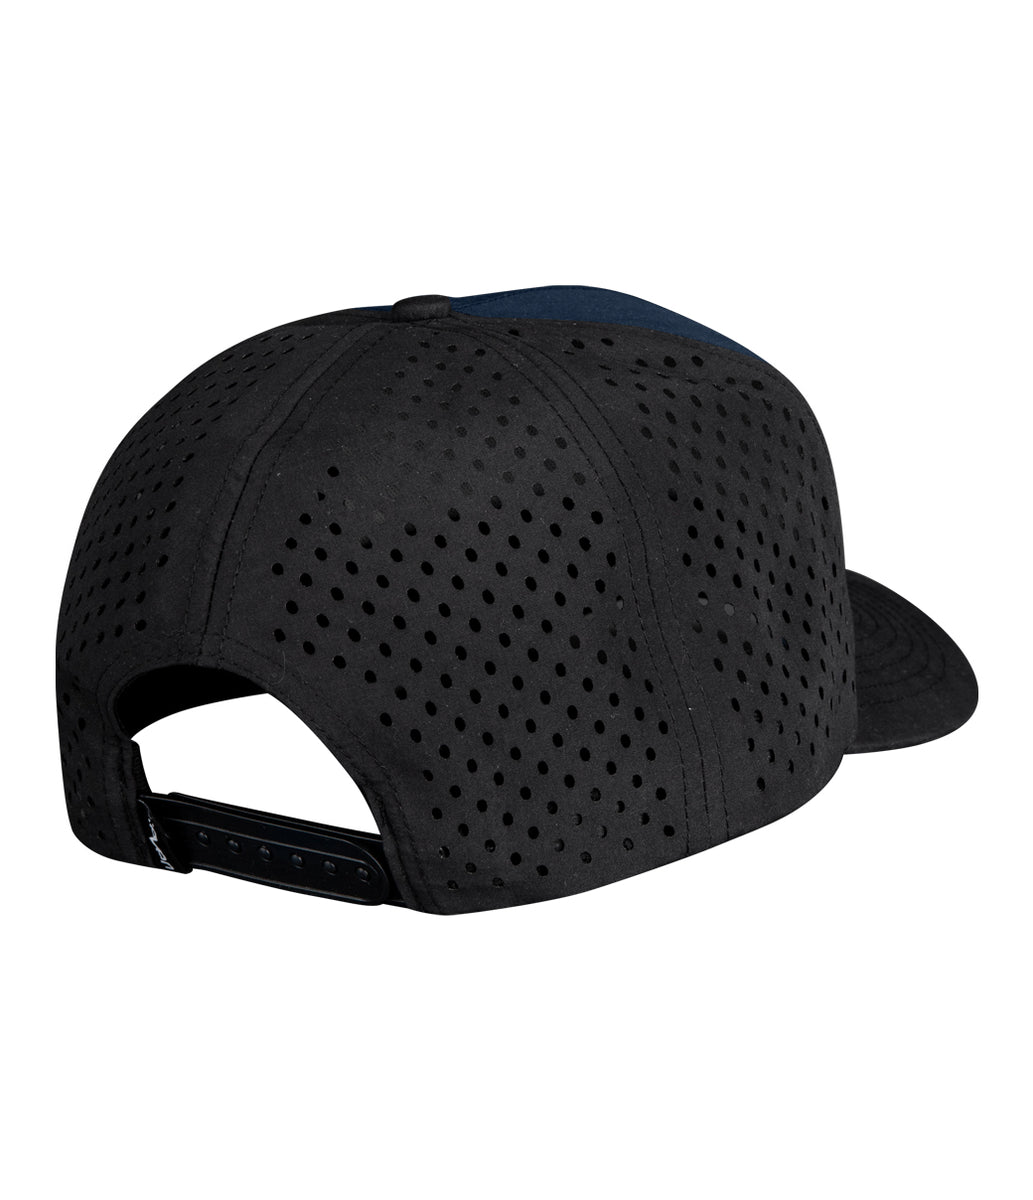 MX Bravo Hat – Navy/Black Seven Flex